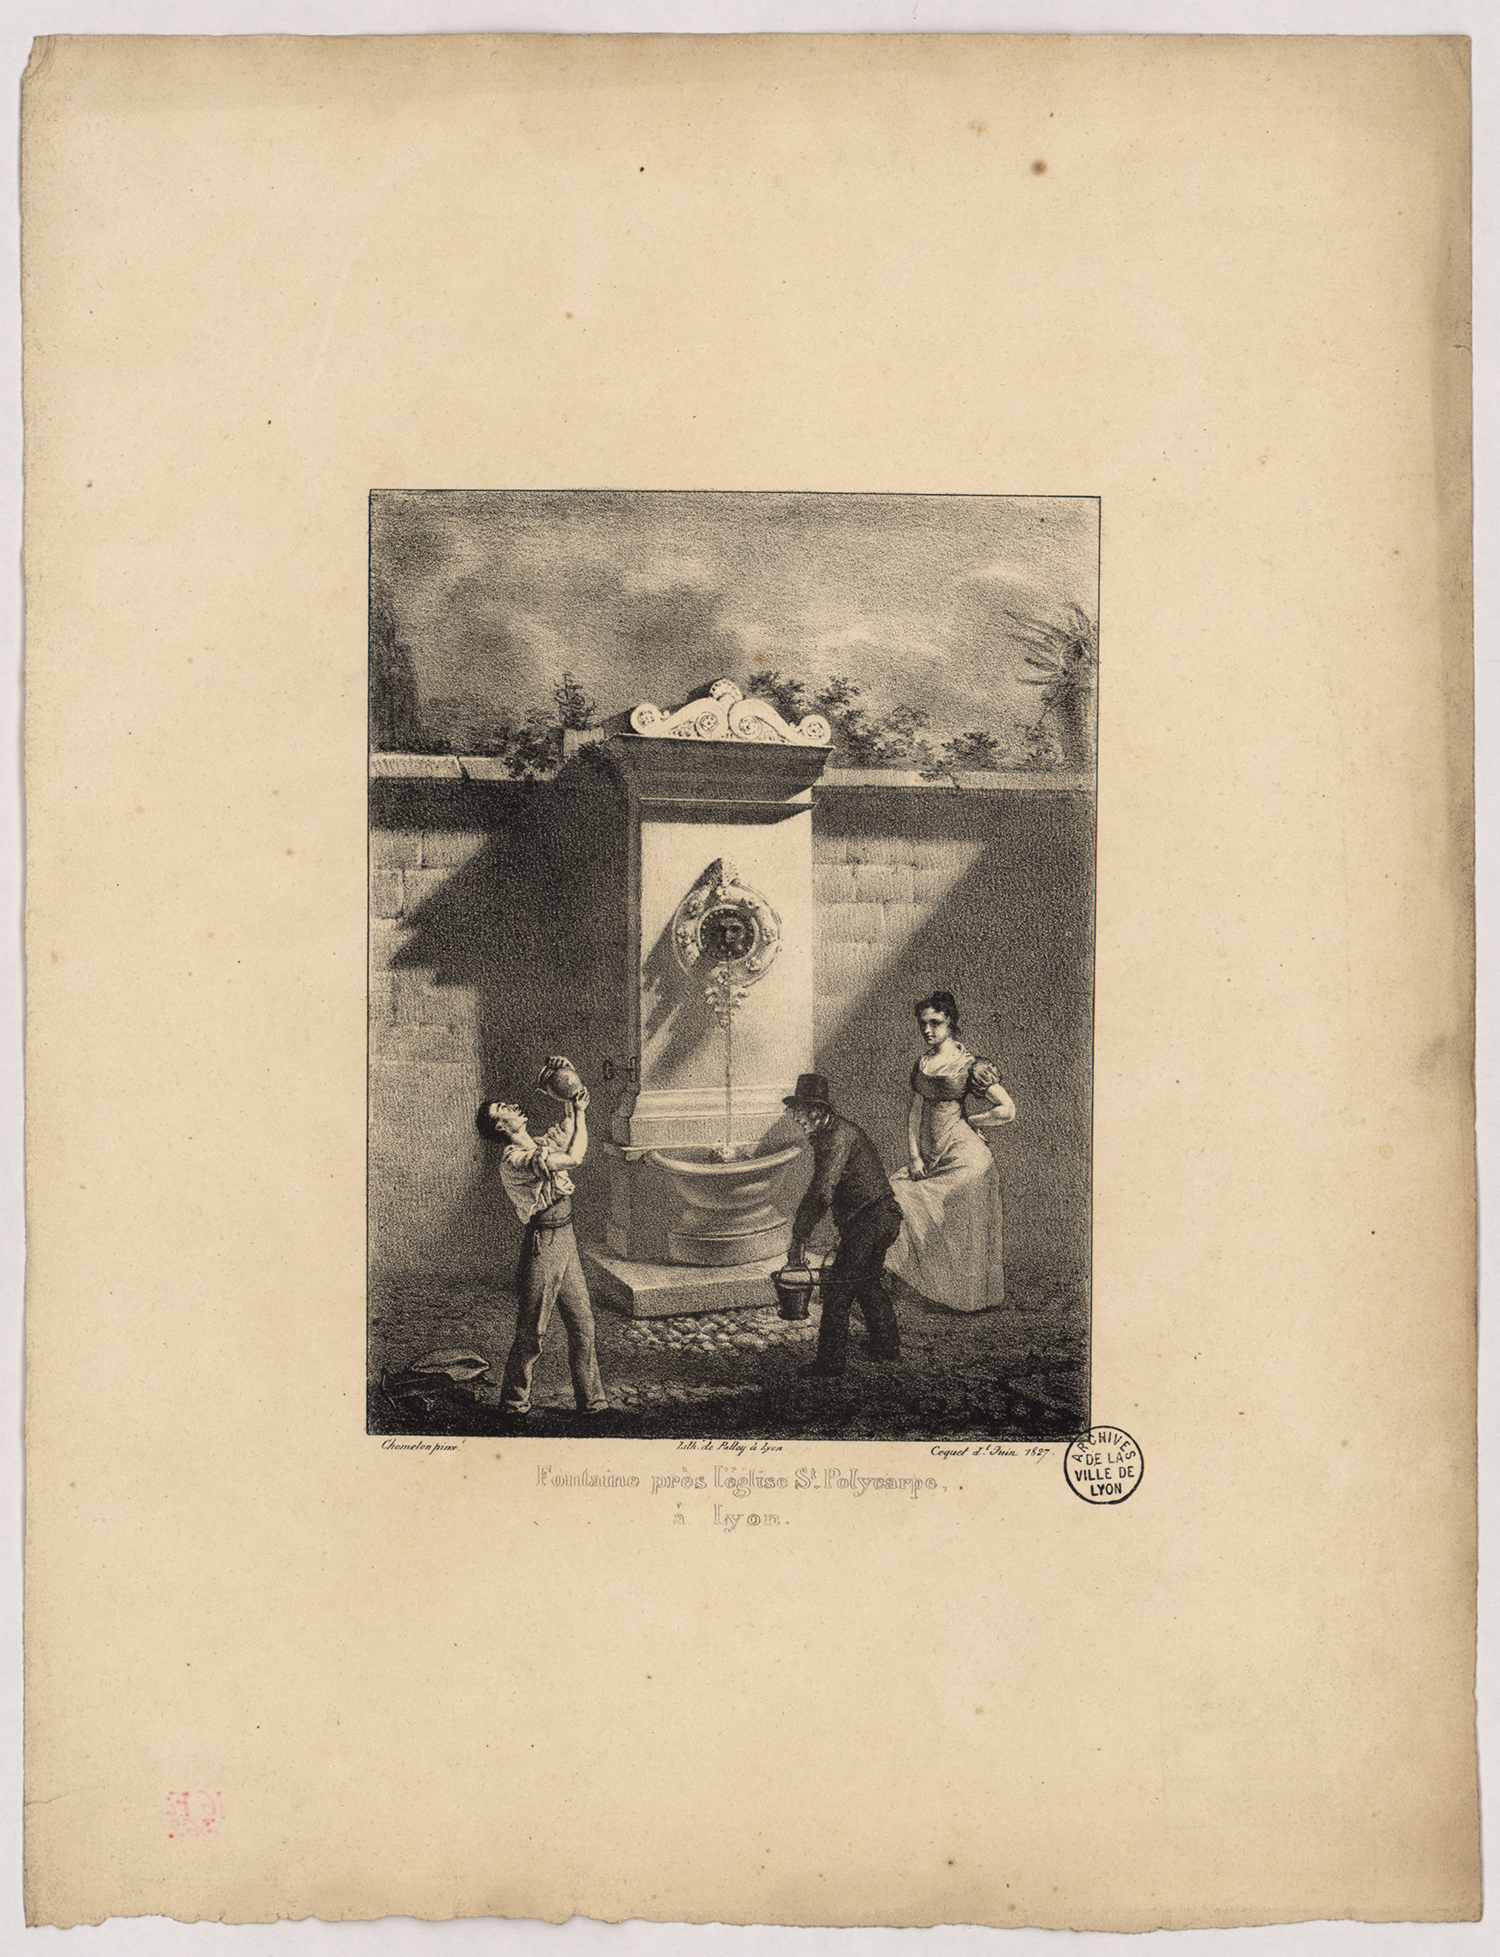 Fontaine près de l'église Saint-Polycarpe à Lyon : lithographie NB (1827, cote : 16FI/362)